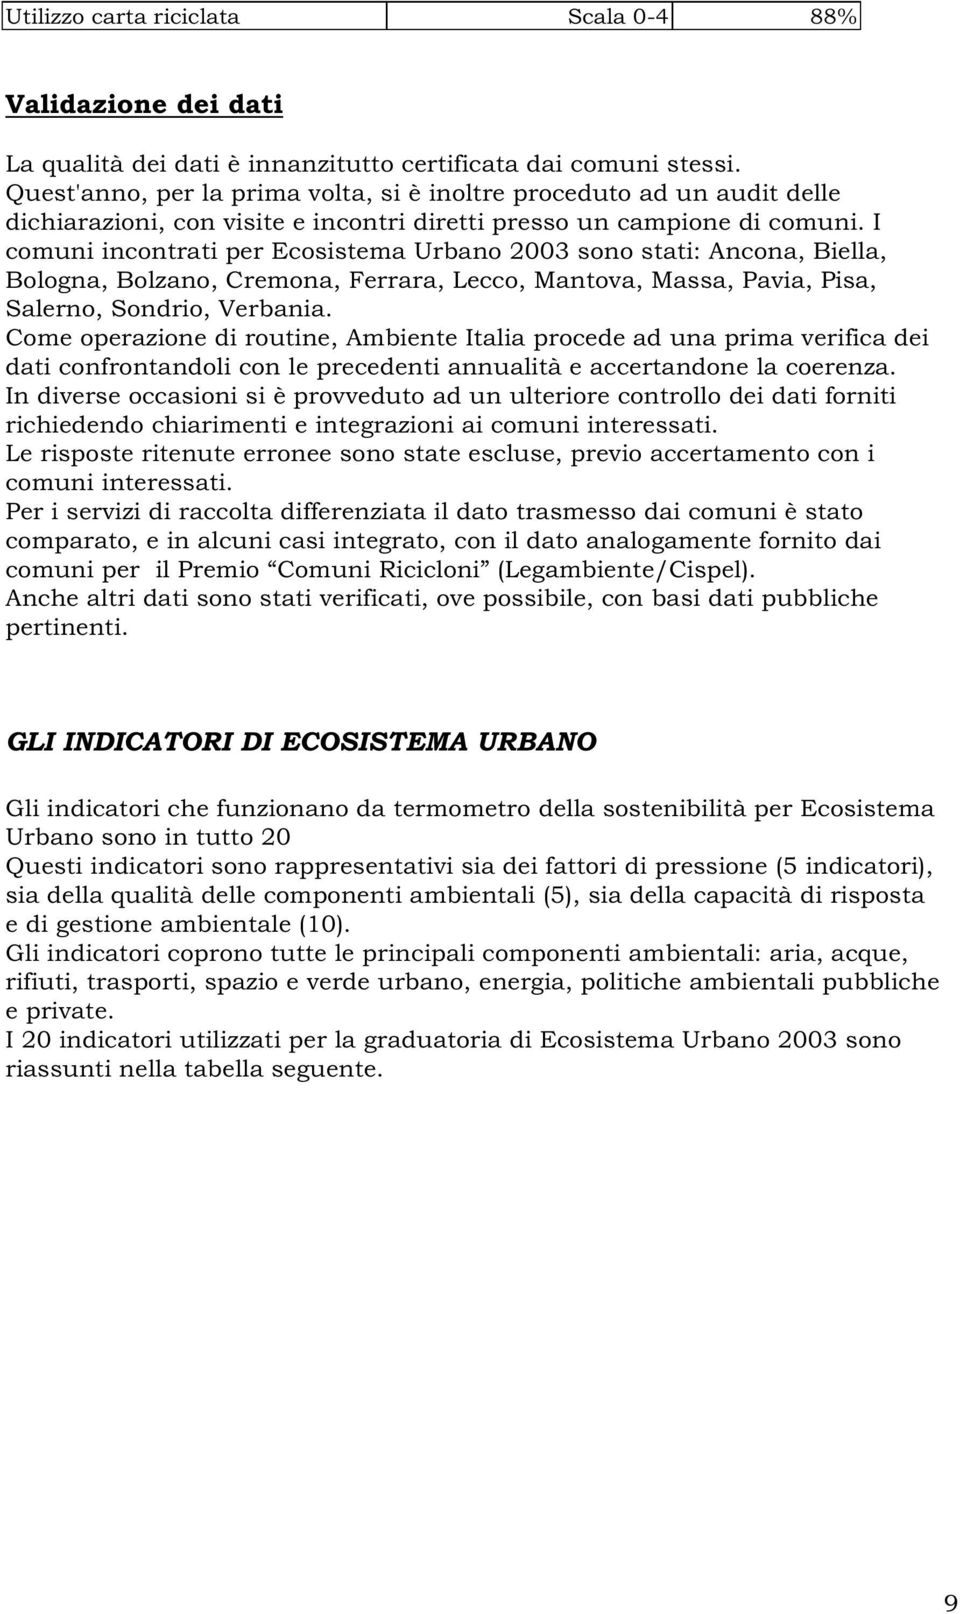 I comuni incontrati per Ecosistema Urbano 2003 sono stati: Ancona, Biella, Bologna, Bolzano, Cremona, Ferrara, Lecco, Mantova, Massa, Pavia, Pisa, Salerno, Sondrio, Verbania.